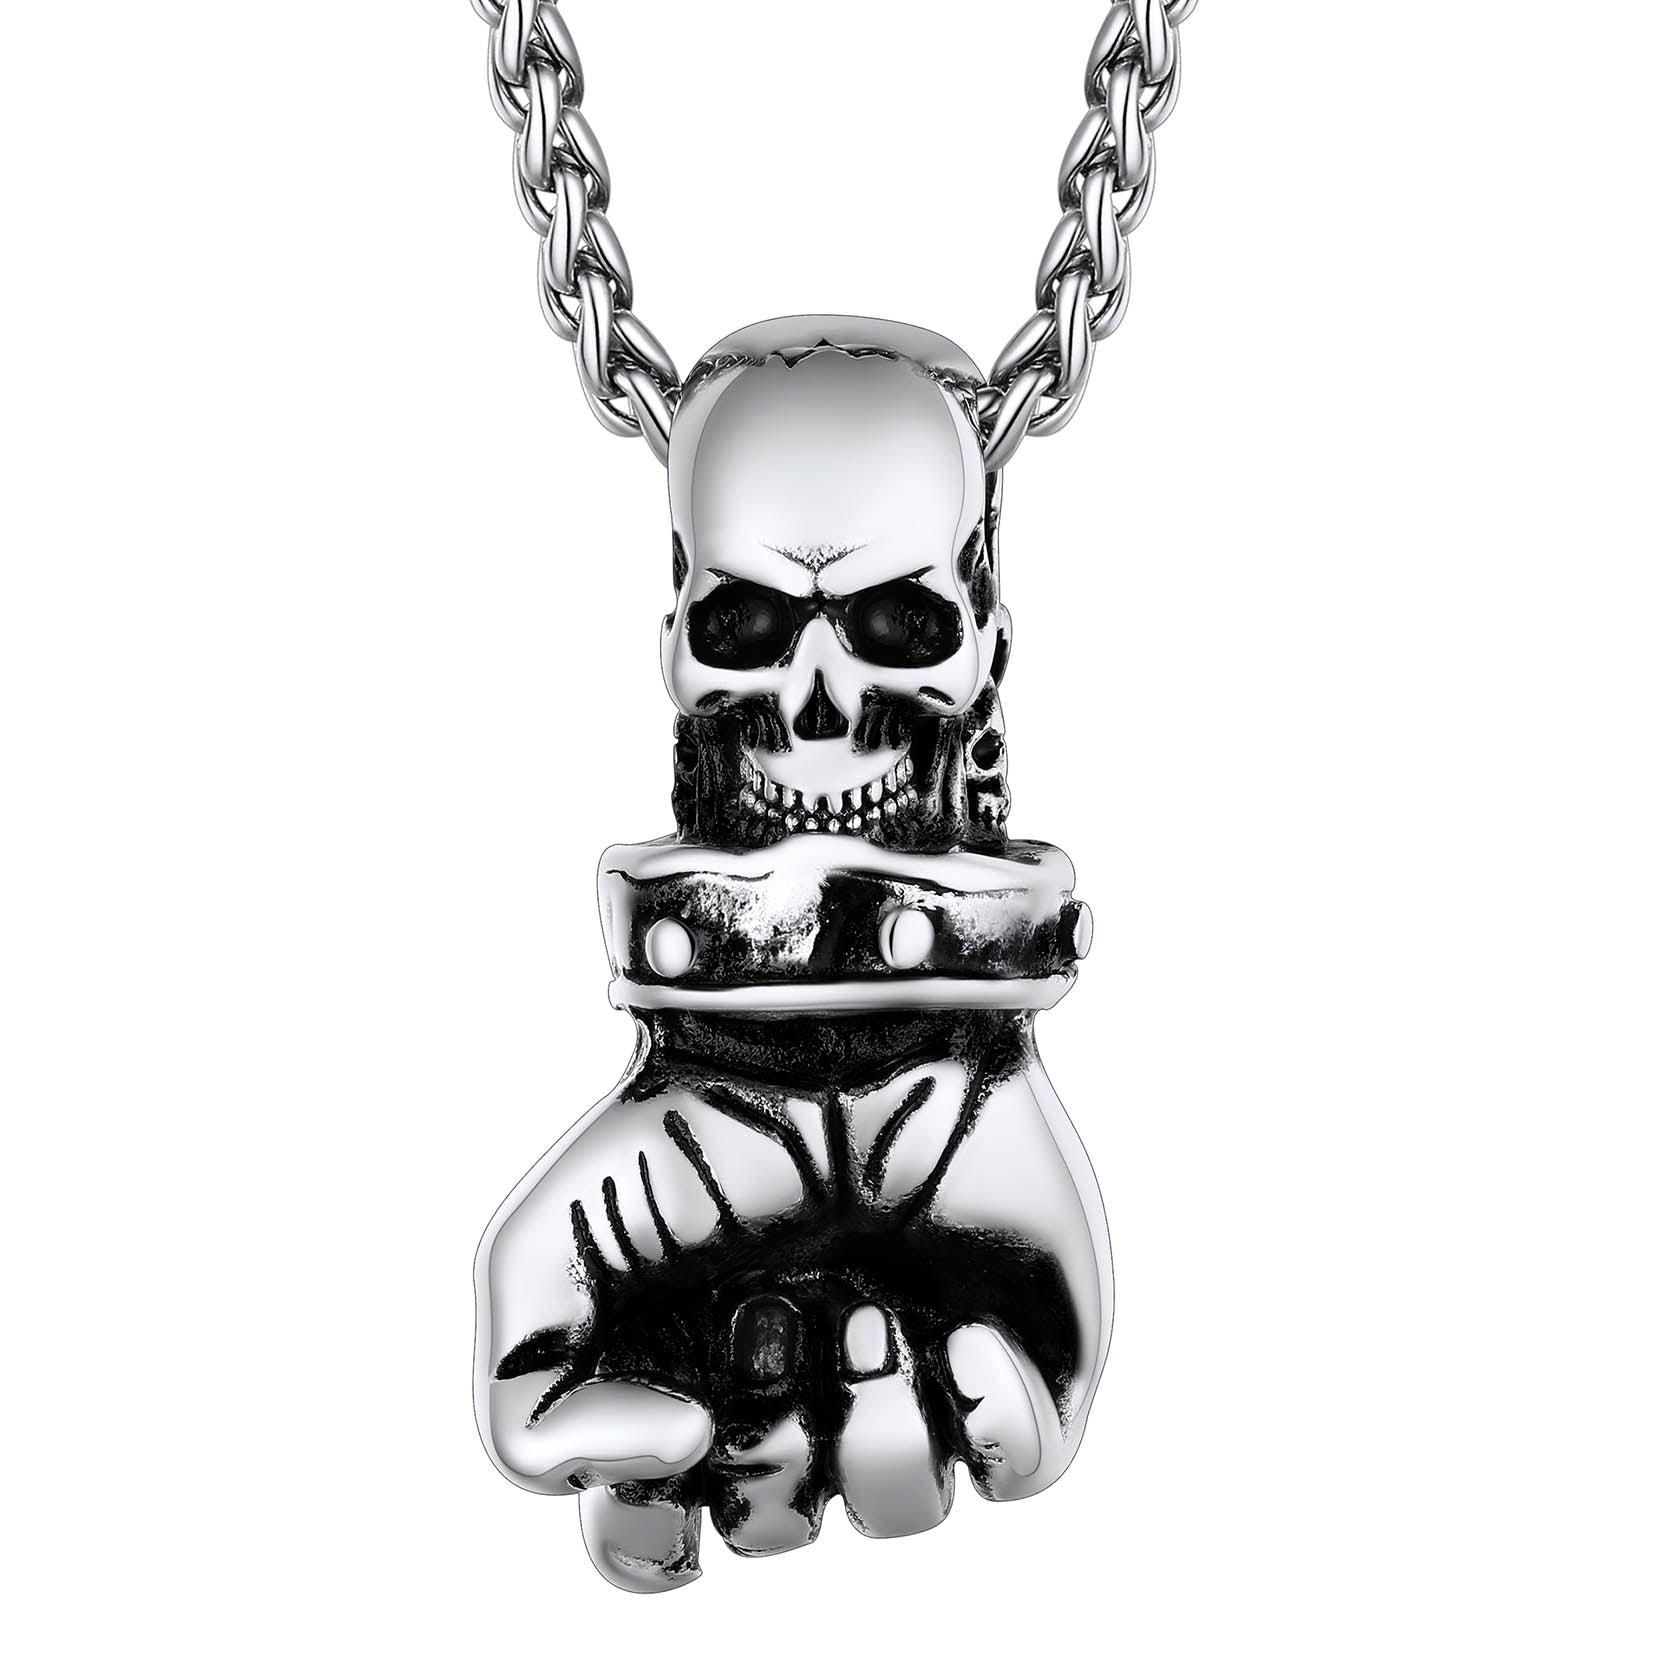 FaithHeart Punk Skull Fist Pendant Necklace for Men FaithHeart